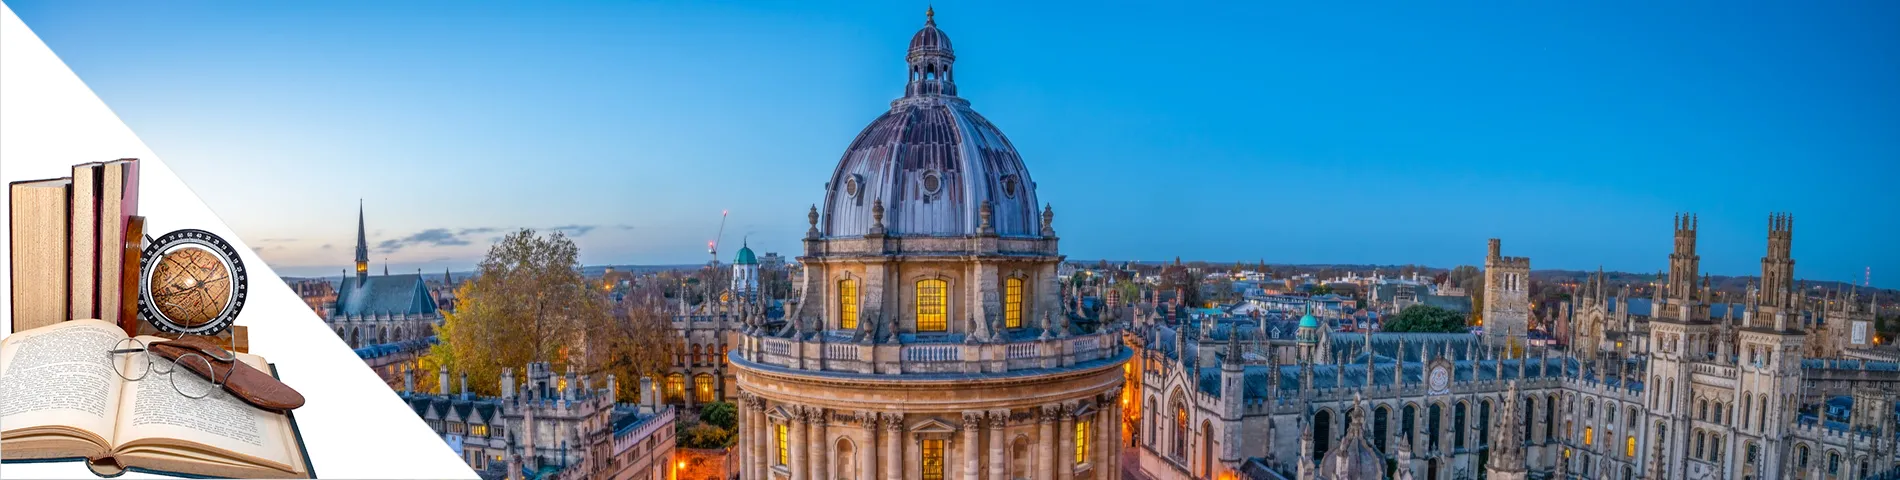 Oxford - English & Arts & Literature